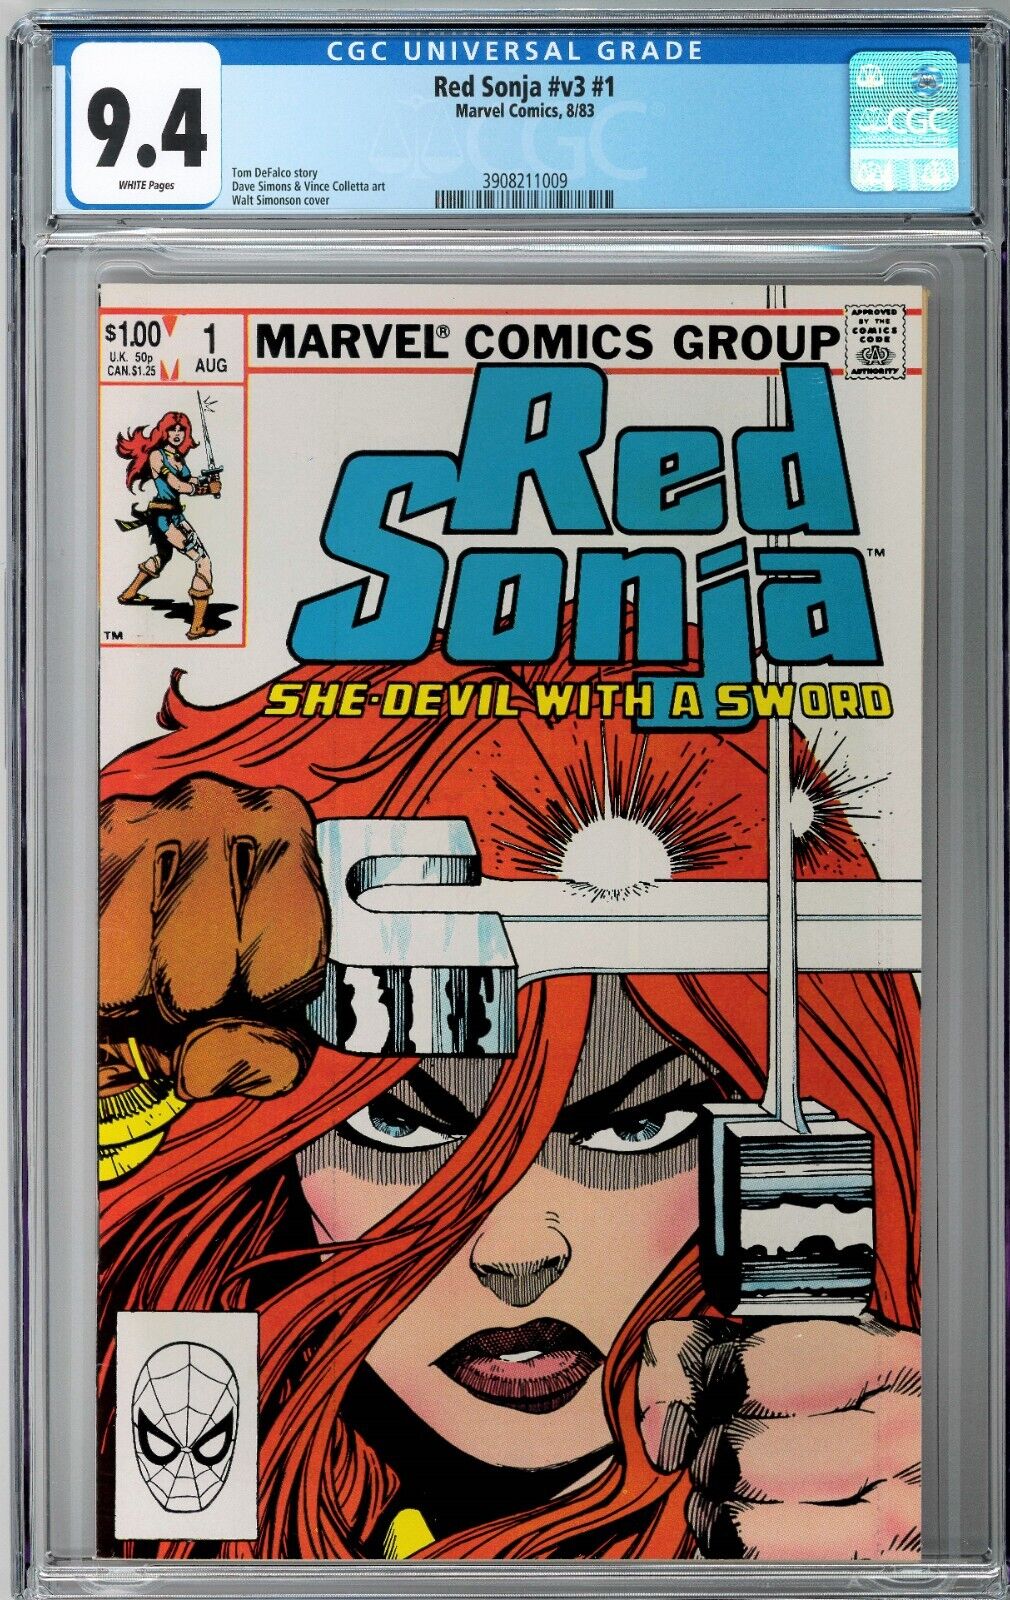 Red Sonja v3 #1 CGC 9.4 (Aug 1983, Marvel) Walt Simonson Cover, She-Devil